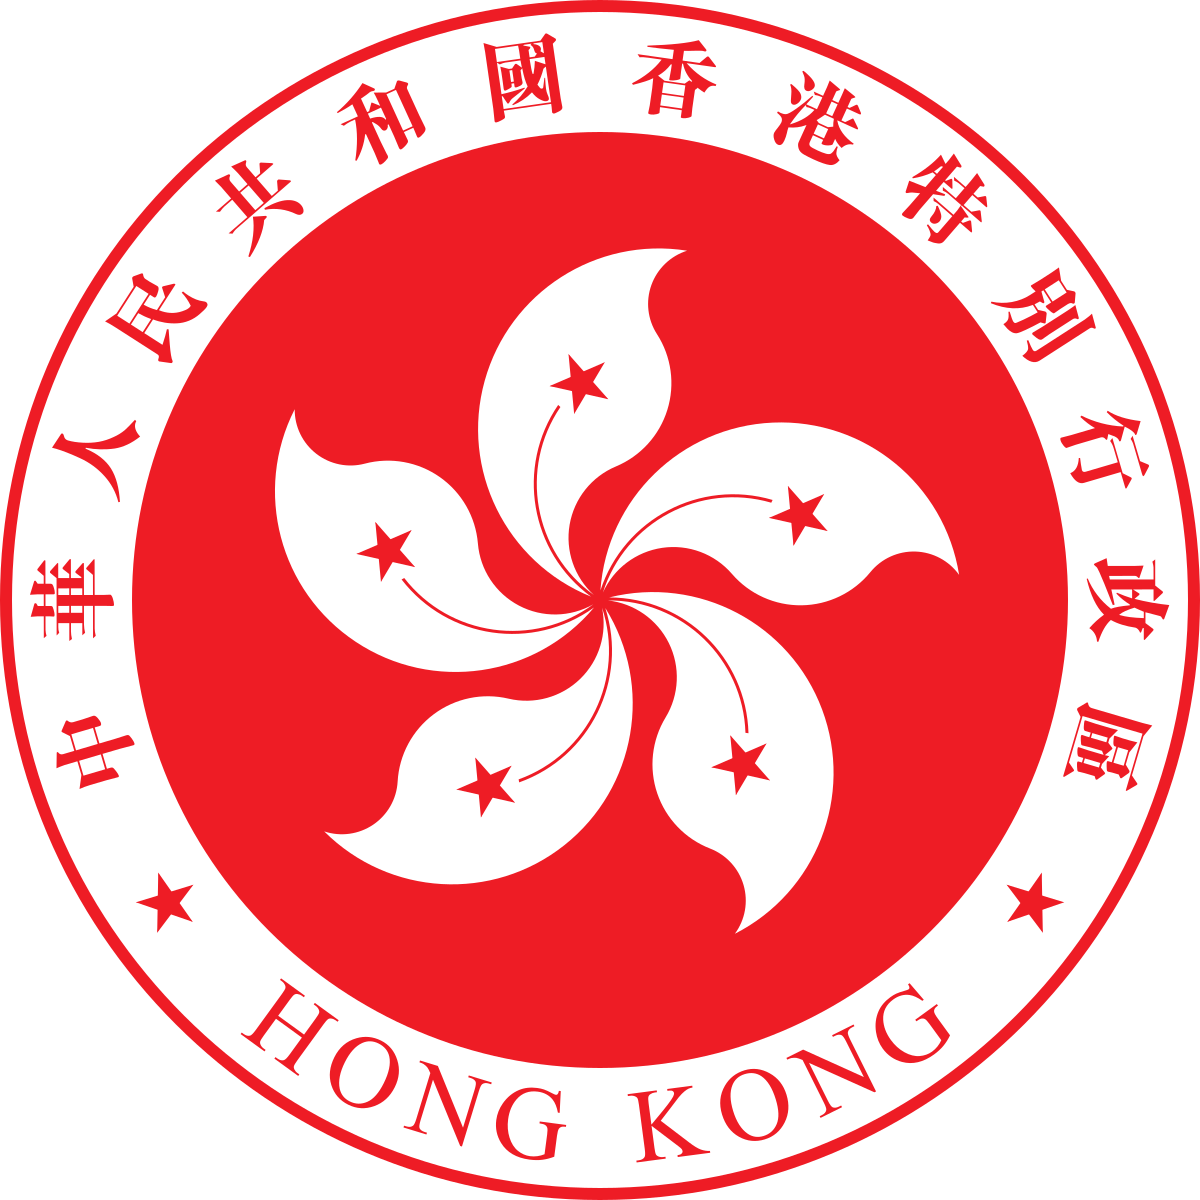 Hong Kong Flag PNG HD Quality